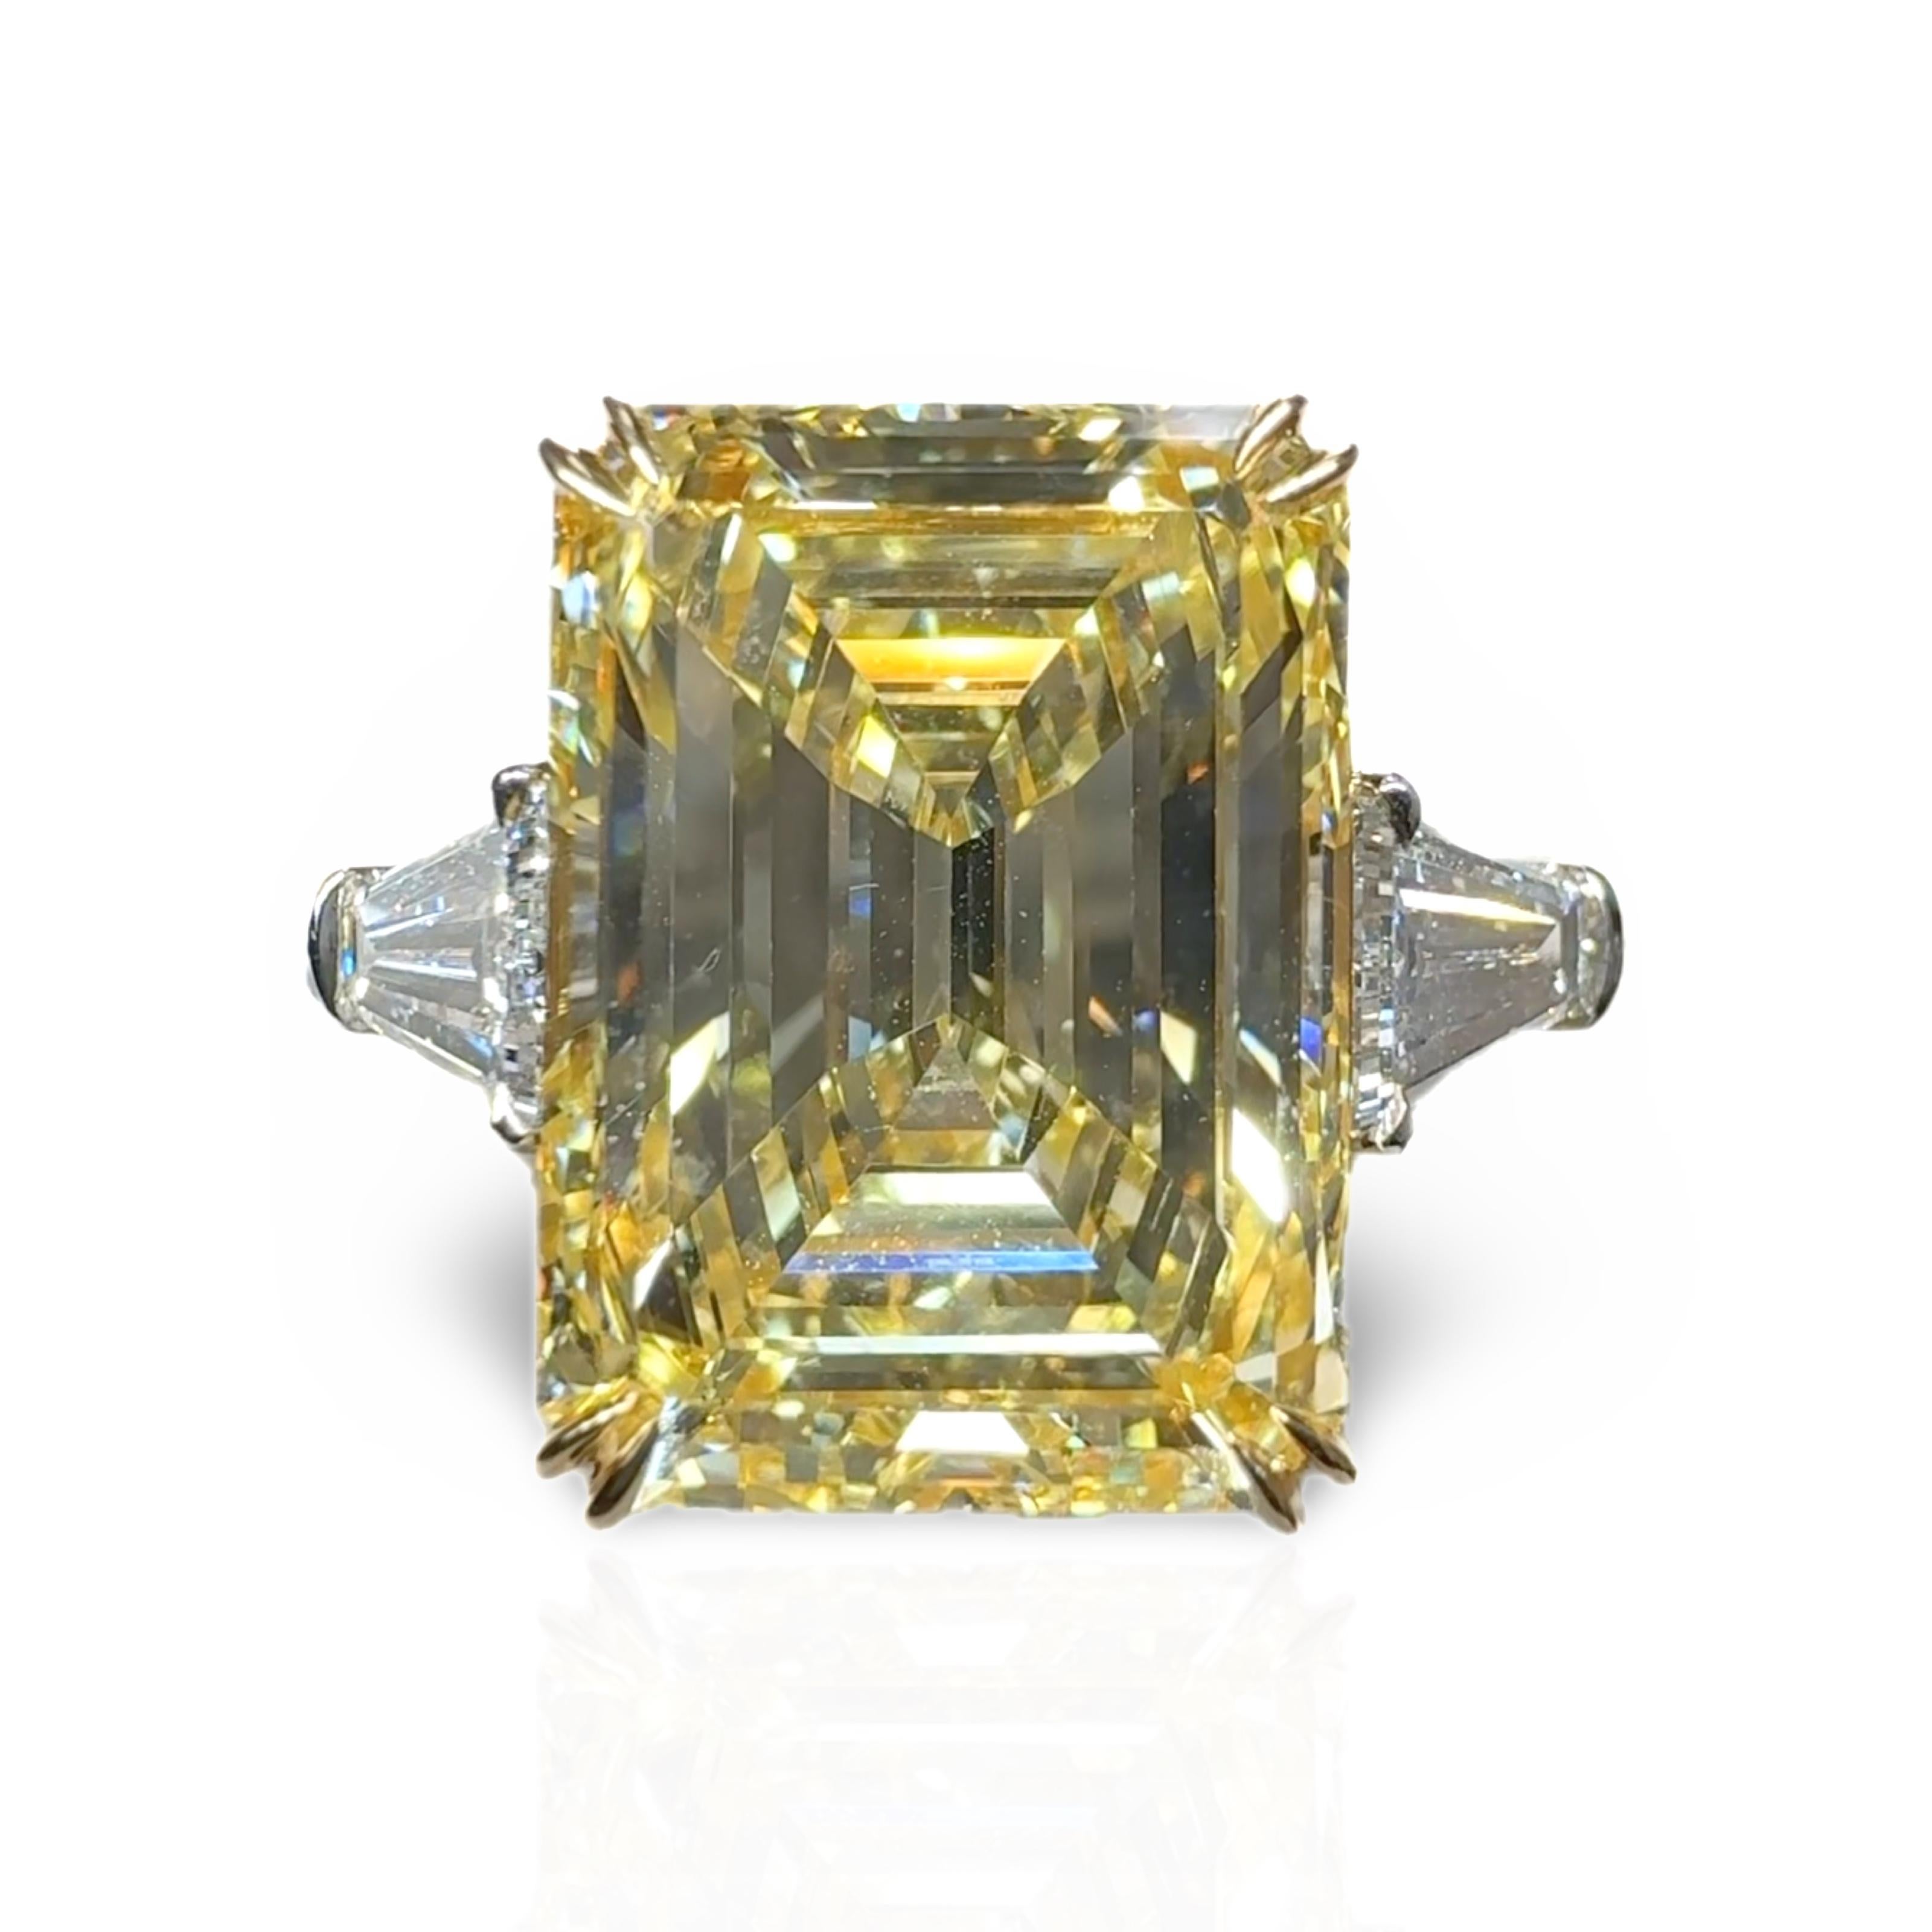 Ein aussagekräftiger Drei-Stein-Ring mit einem makellos geschliffenen natürlichen Fancy Yellow Emerald Cut Diamanten. 
Smaragdschliffe gehören zu den seltensten Schliffen unter den Fancy-Diamanten und sind mit einem Verhältnis von Länge zu